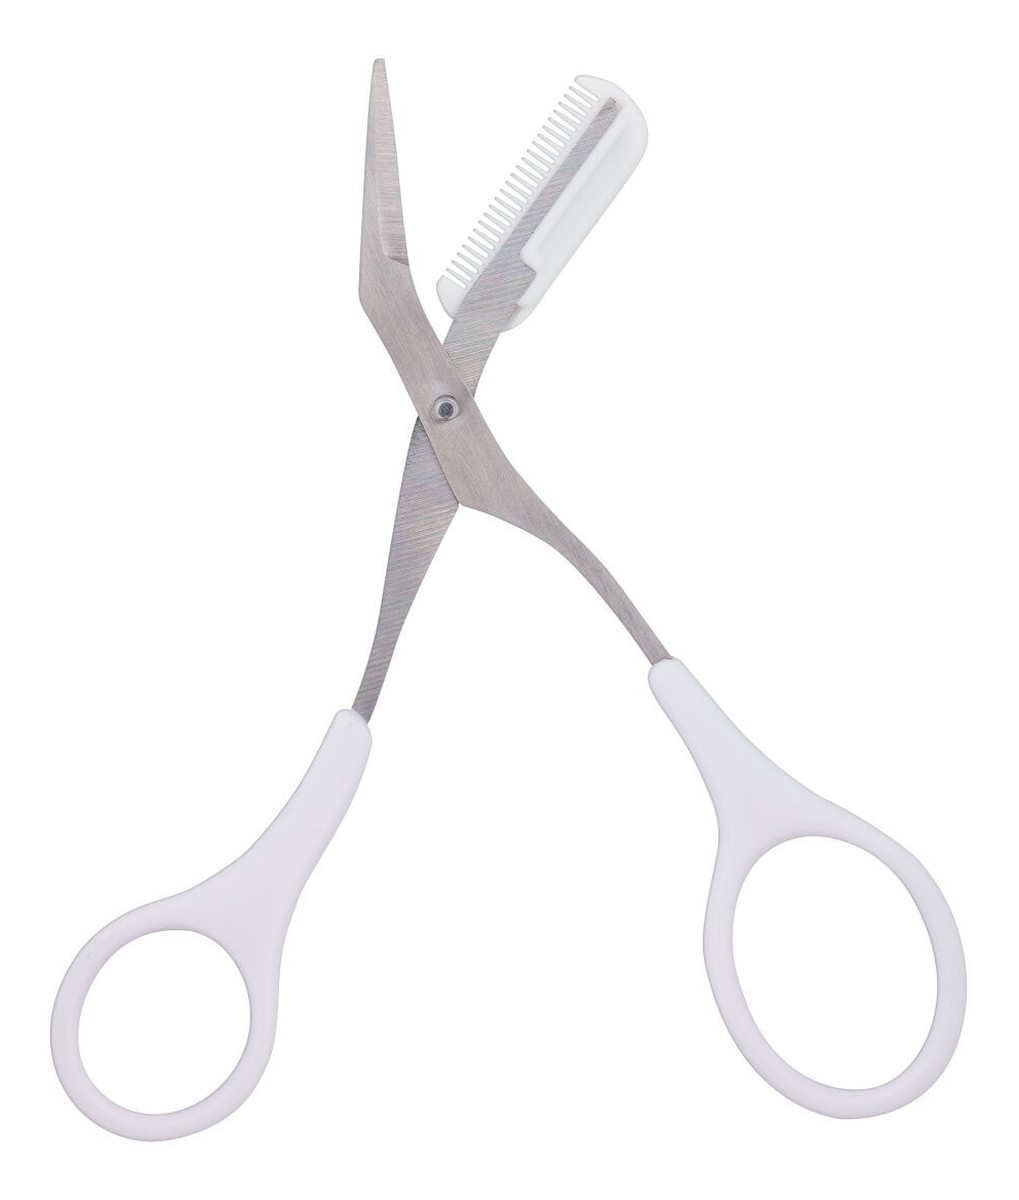 Eyebrow Scissors & Comb Nożyczki i grzebień do brwi